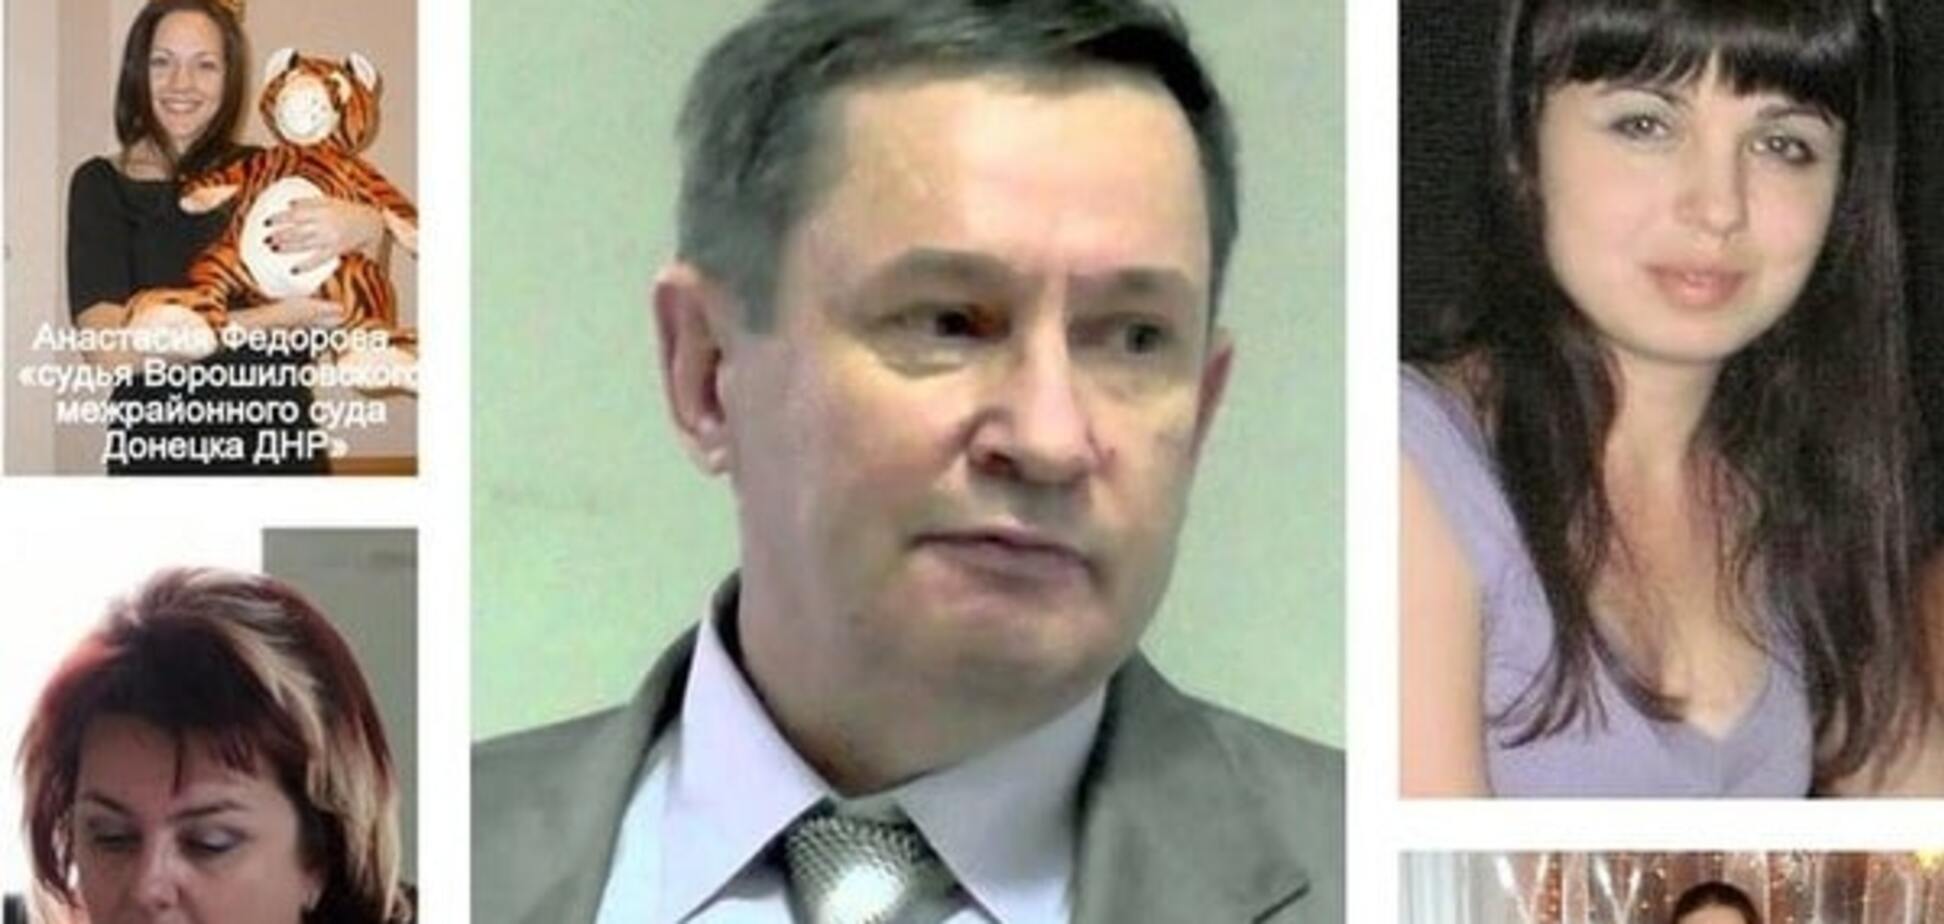 'Героев' надо знать в лицо: Аброськин объявил в розыск 6 'судей ДНР'. Фото предателей